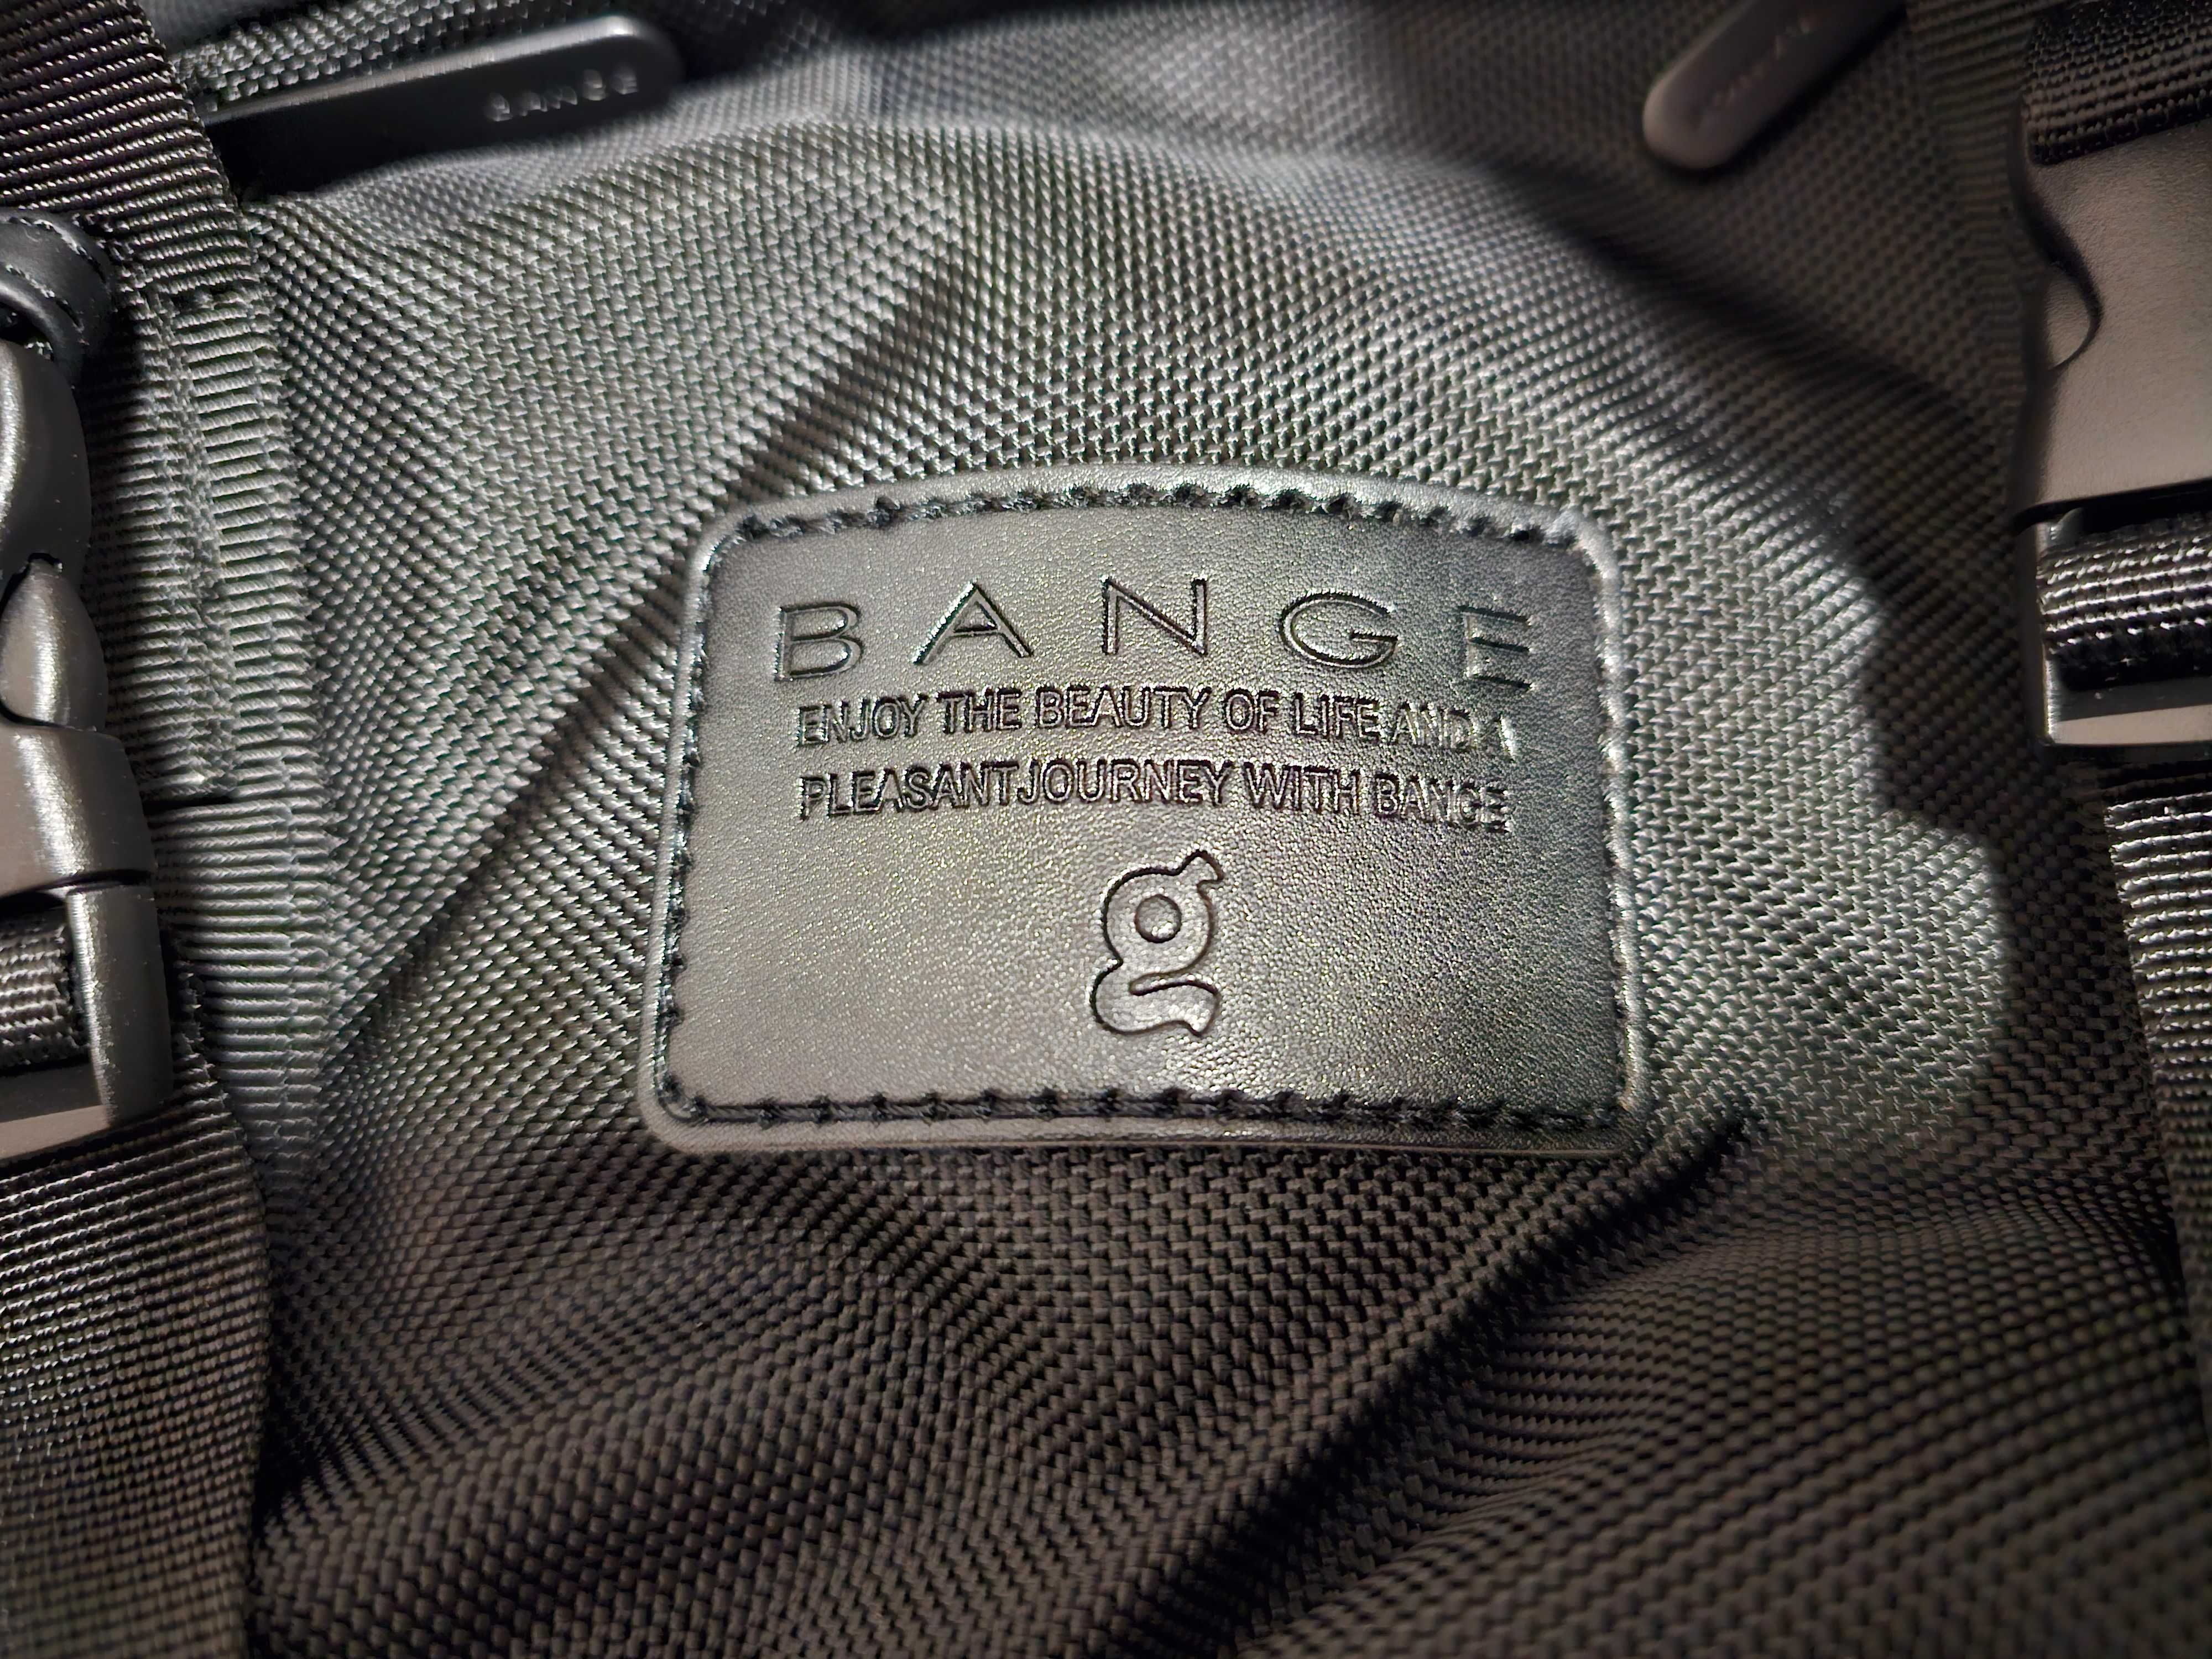 Продам новую сумку-рюкзак фирмы Bange